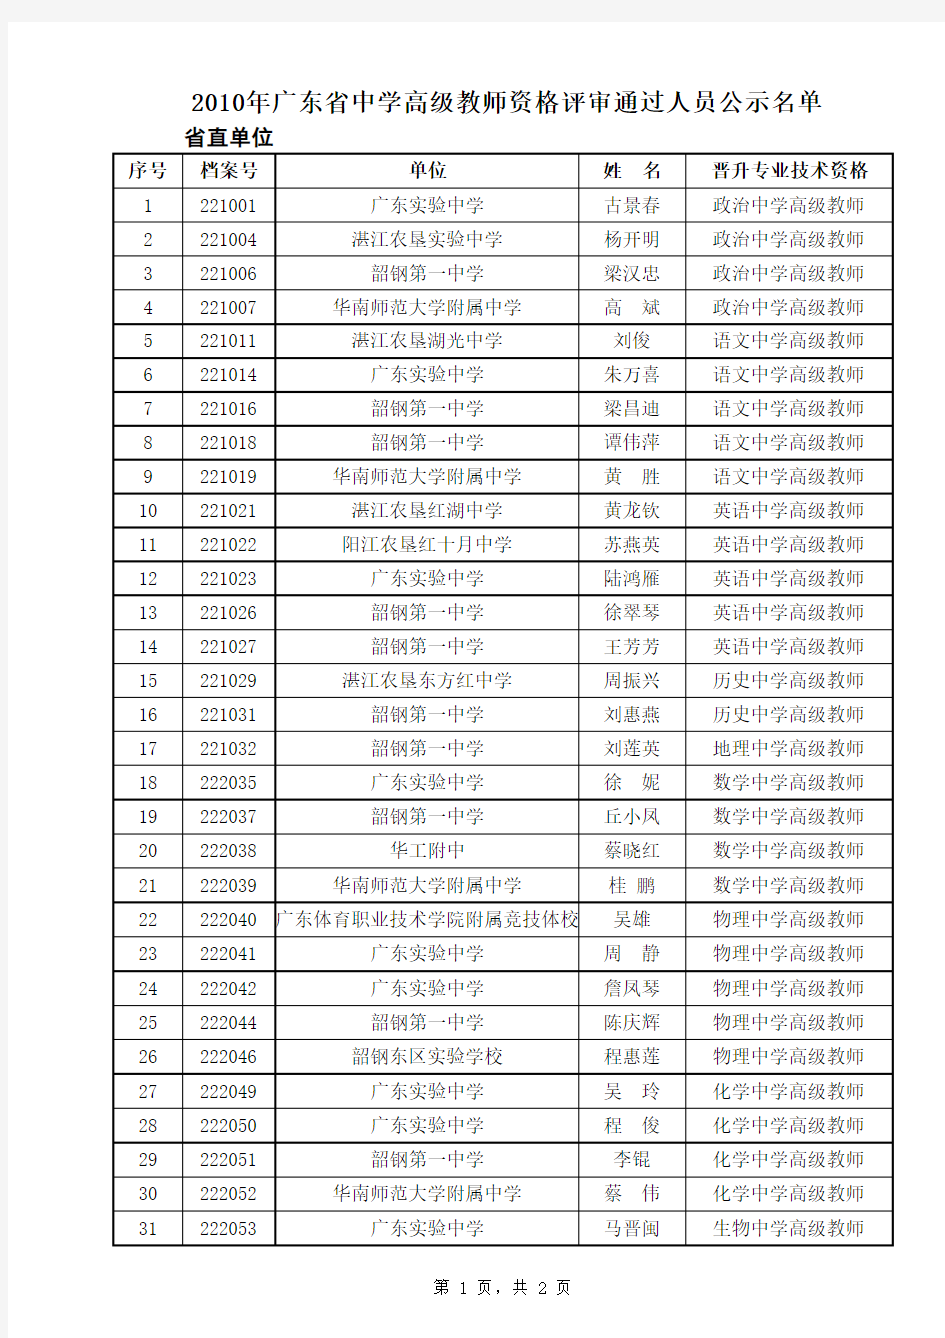 2010中学高级教师公示名单